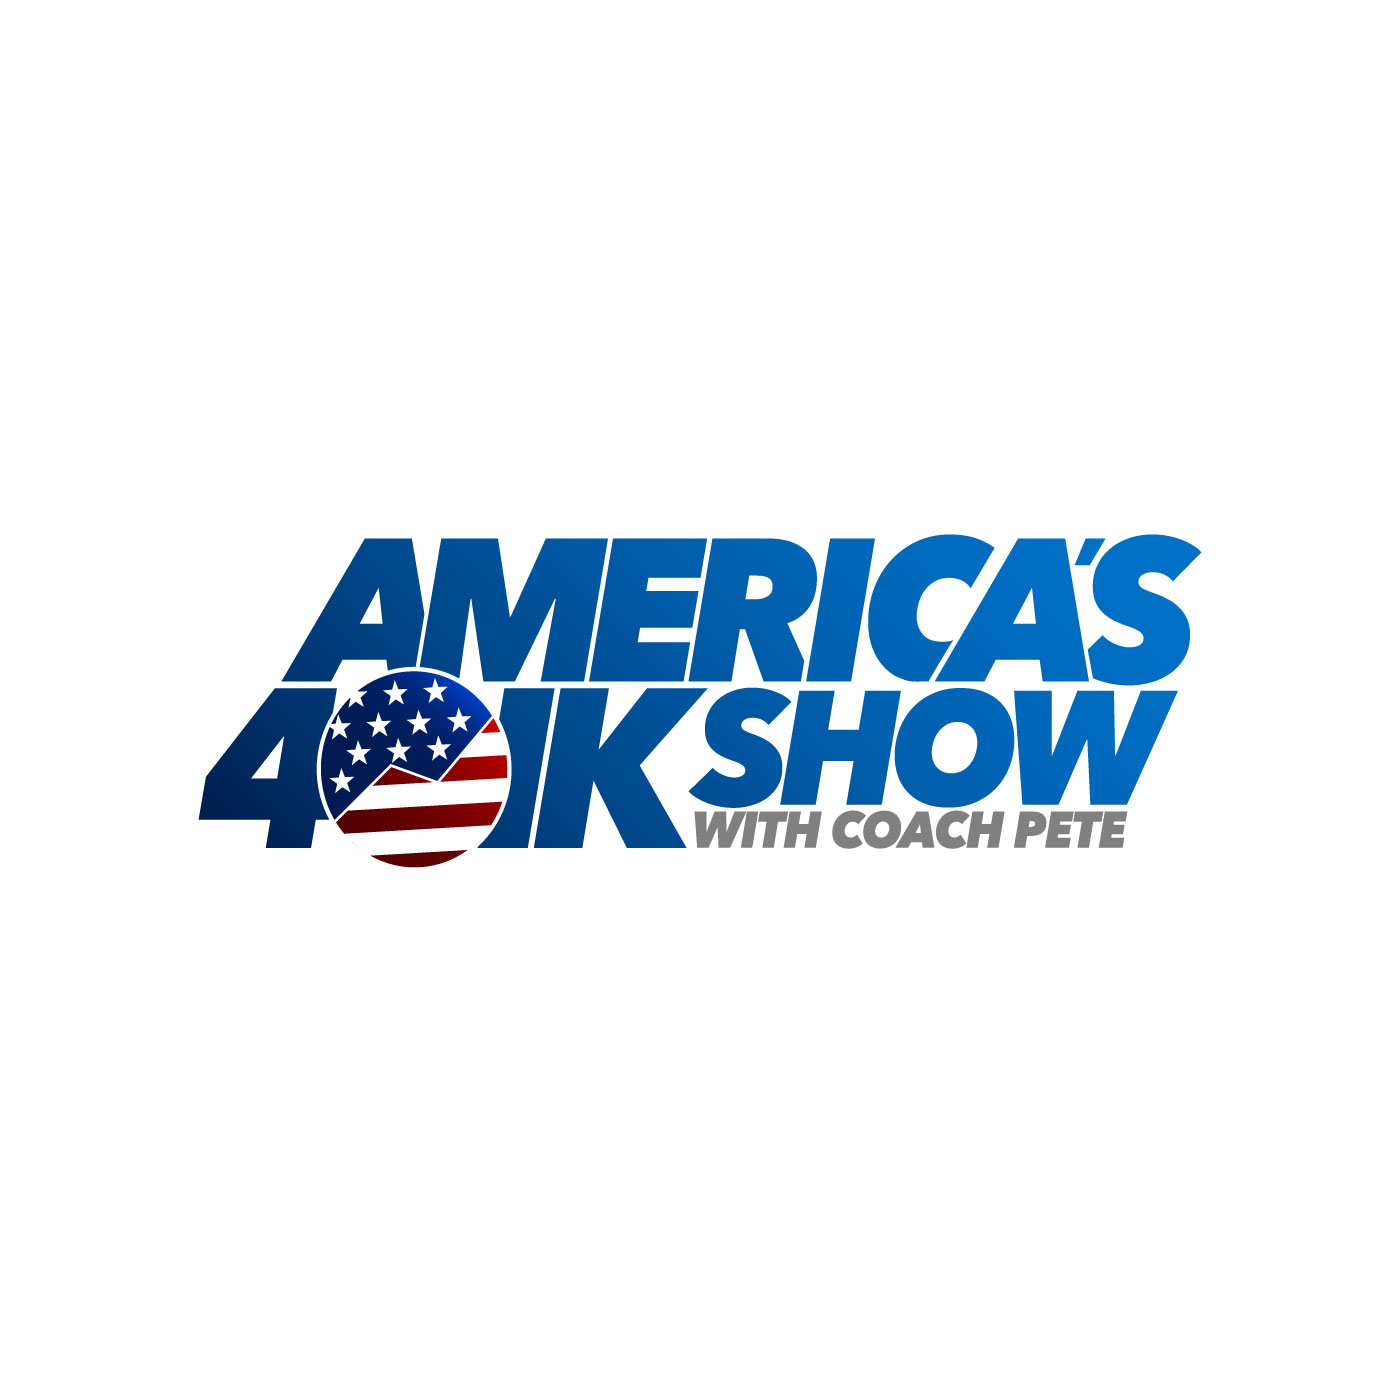 Americas 401k Show